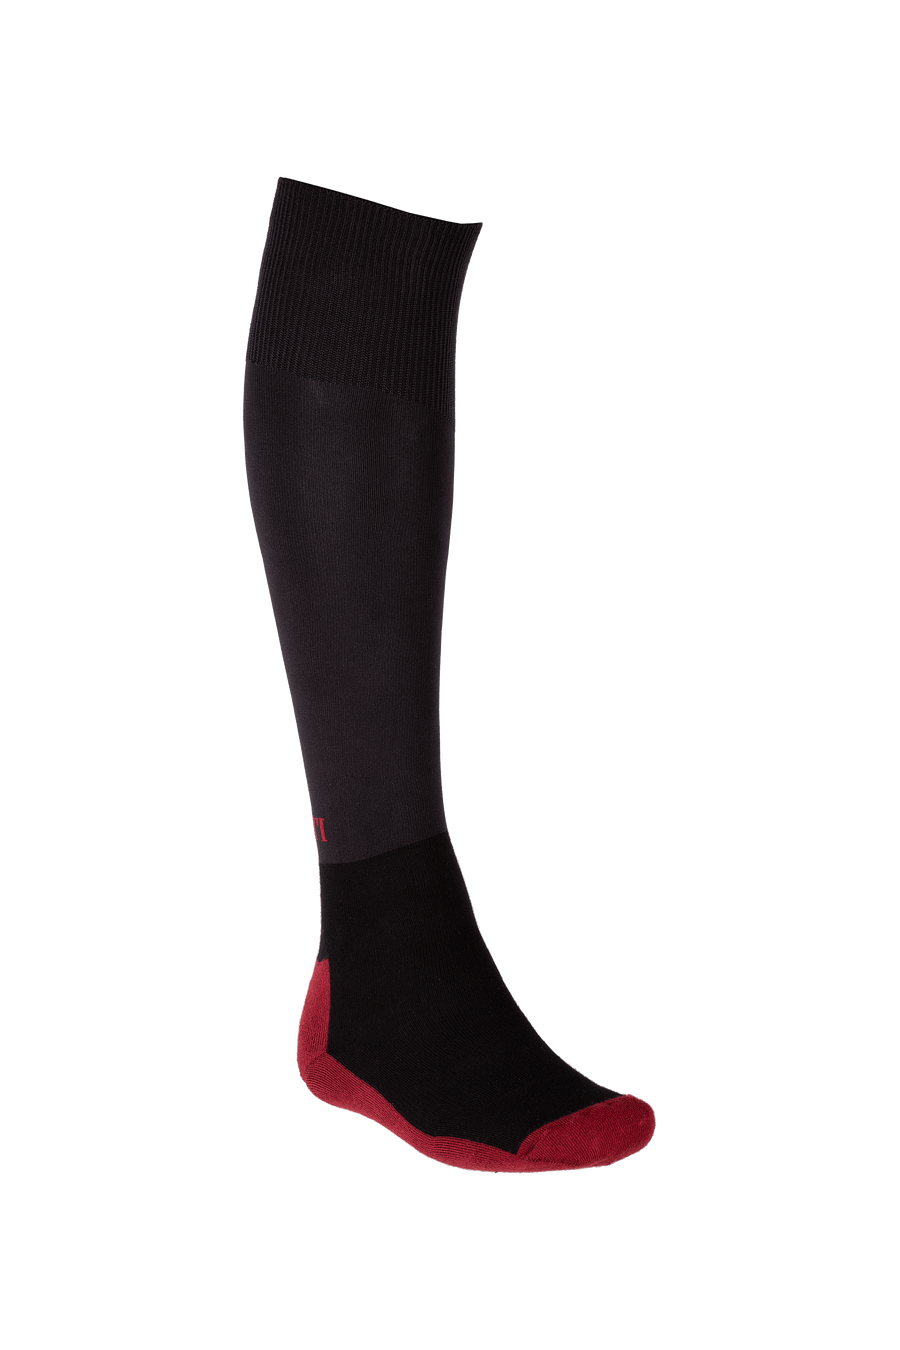 Parlanti socks - HorseworldEU